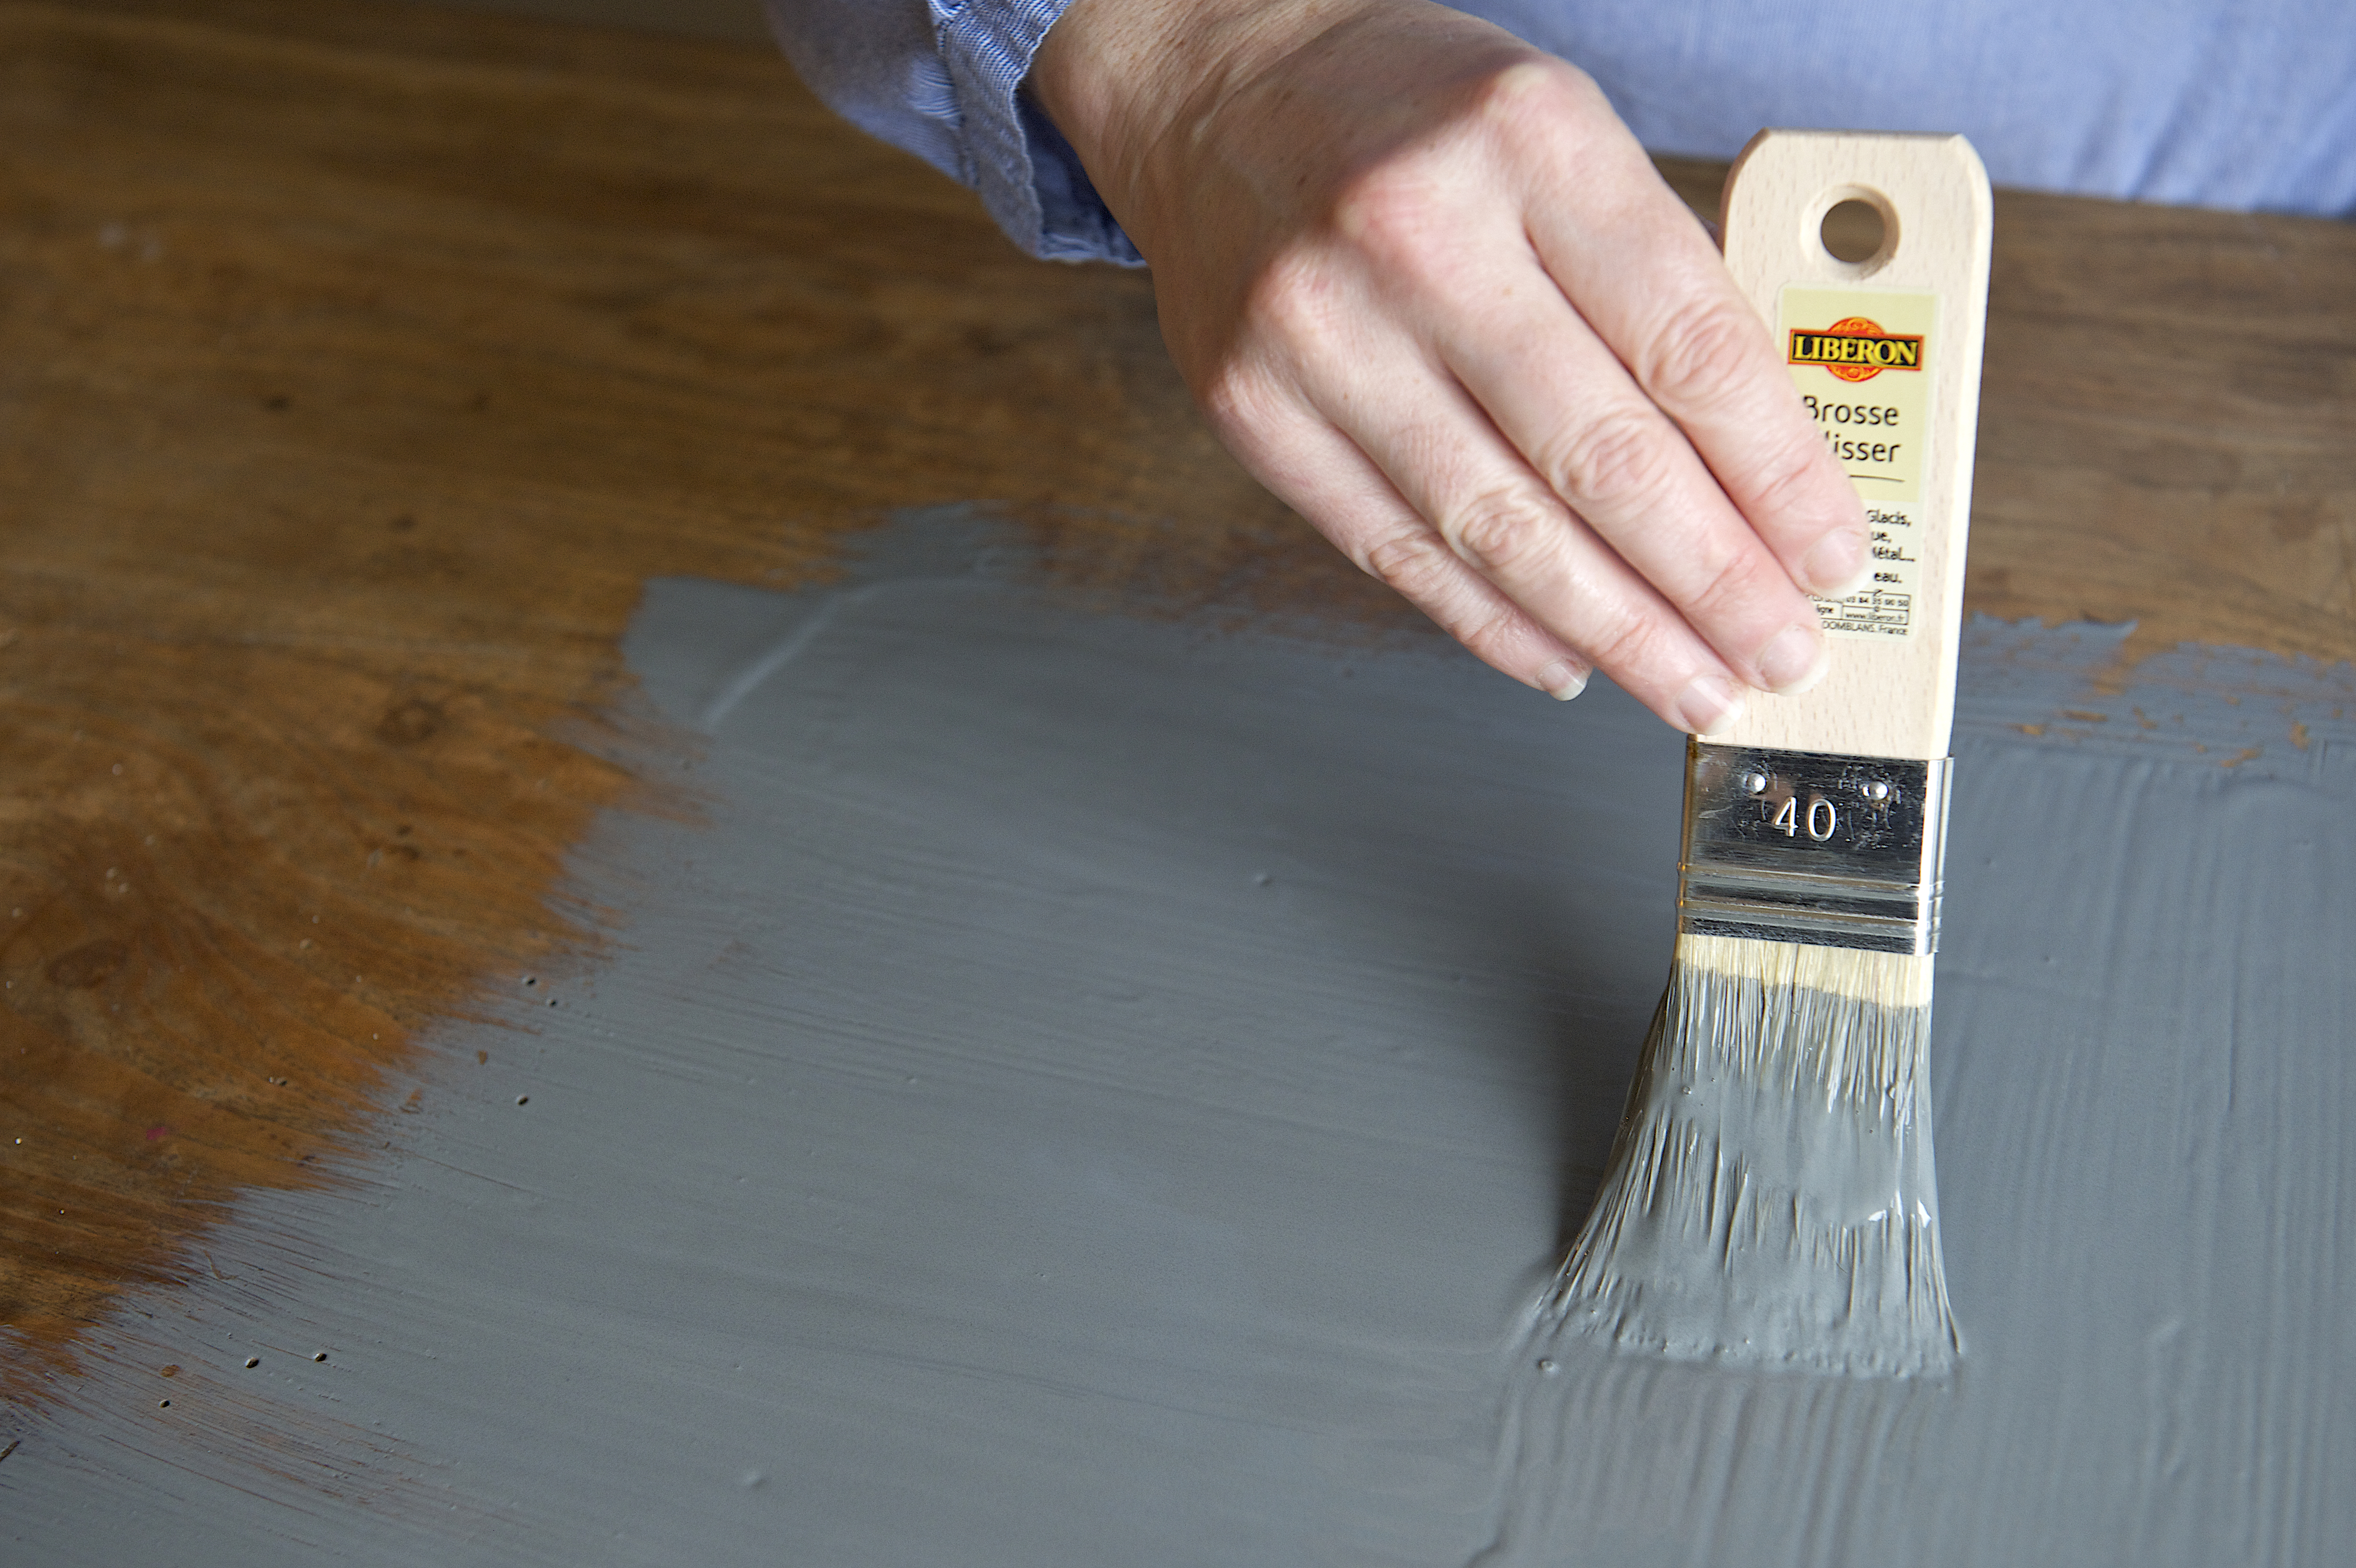 Servez-vous d’un papier de verre pour frotter le plateau en suivant le sens des fibres du bois. Ensuite, après avoir enlevé les poussières, enduisez la partie de la peinture à effet ardoise, puis passez un coup de chiffon après le séchage.